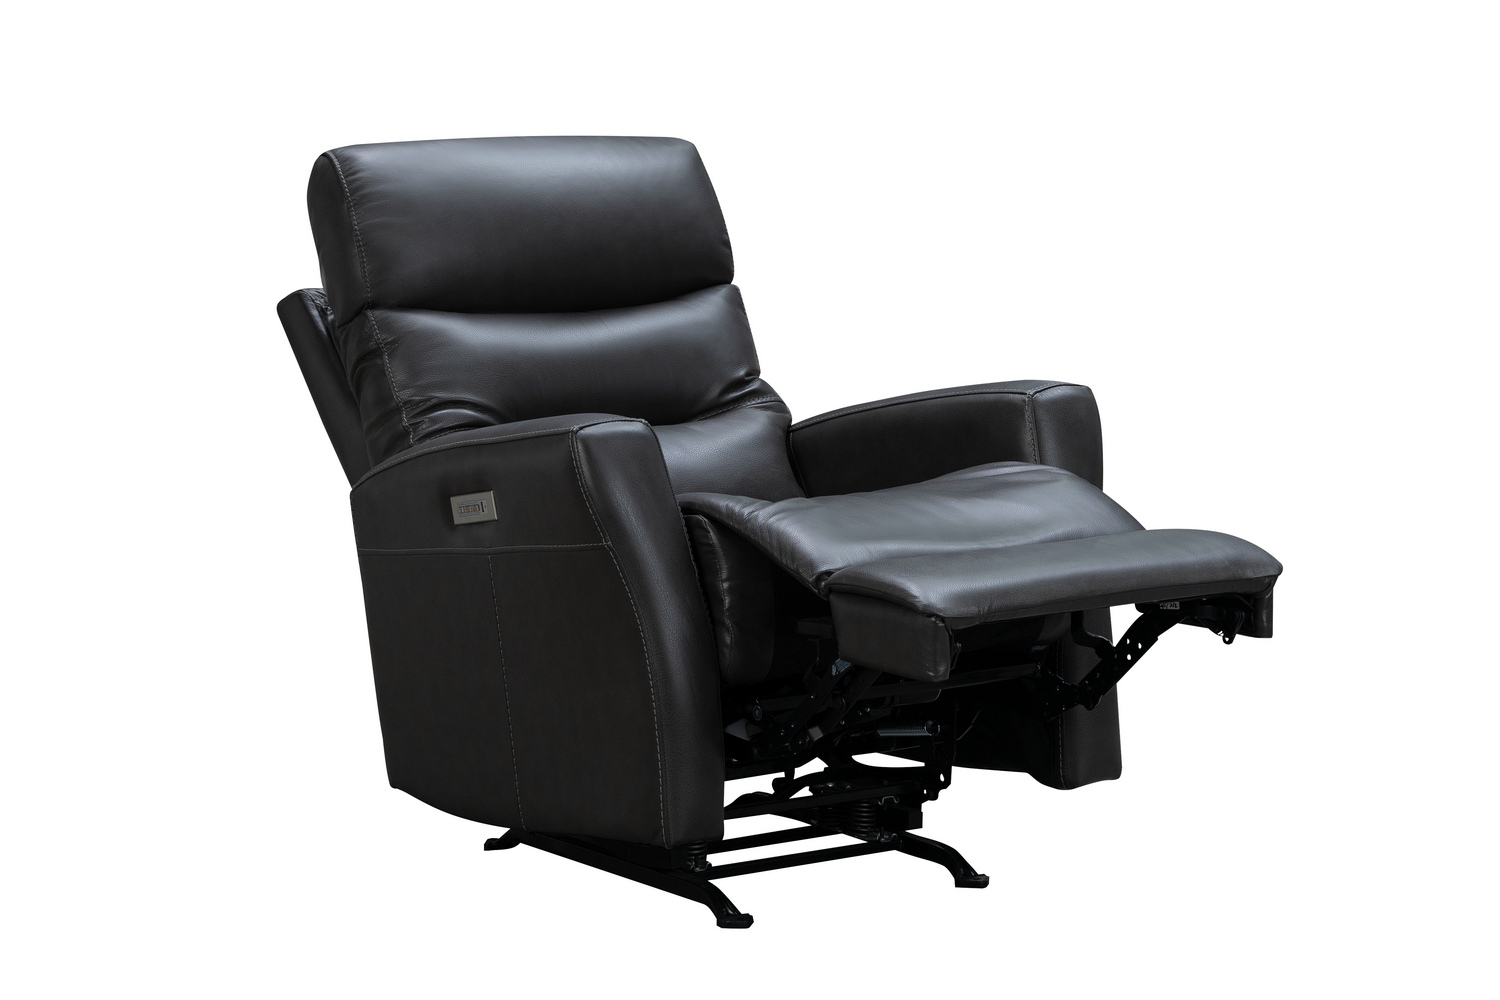 Barcalounger Donavan Power Rocker Recliner Chair with Power Head Rest and Lumbar - Matteo Smokey Gray/Leather match